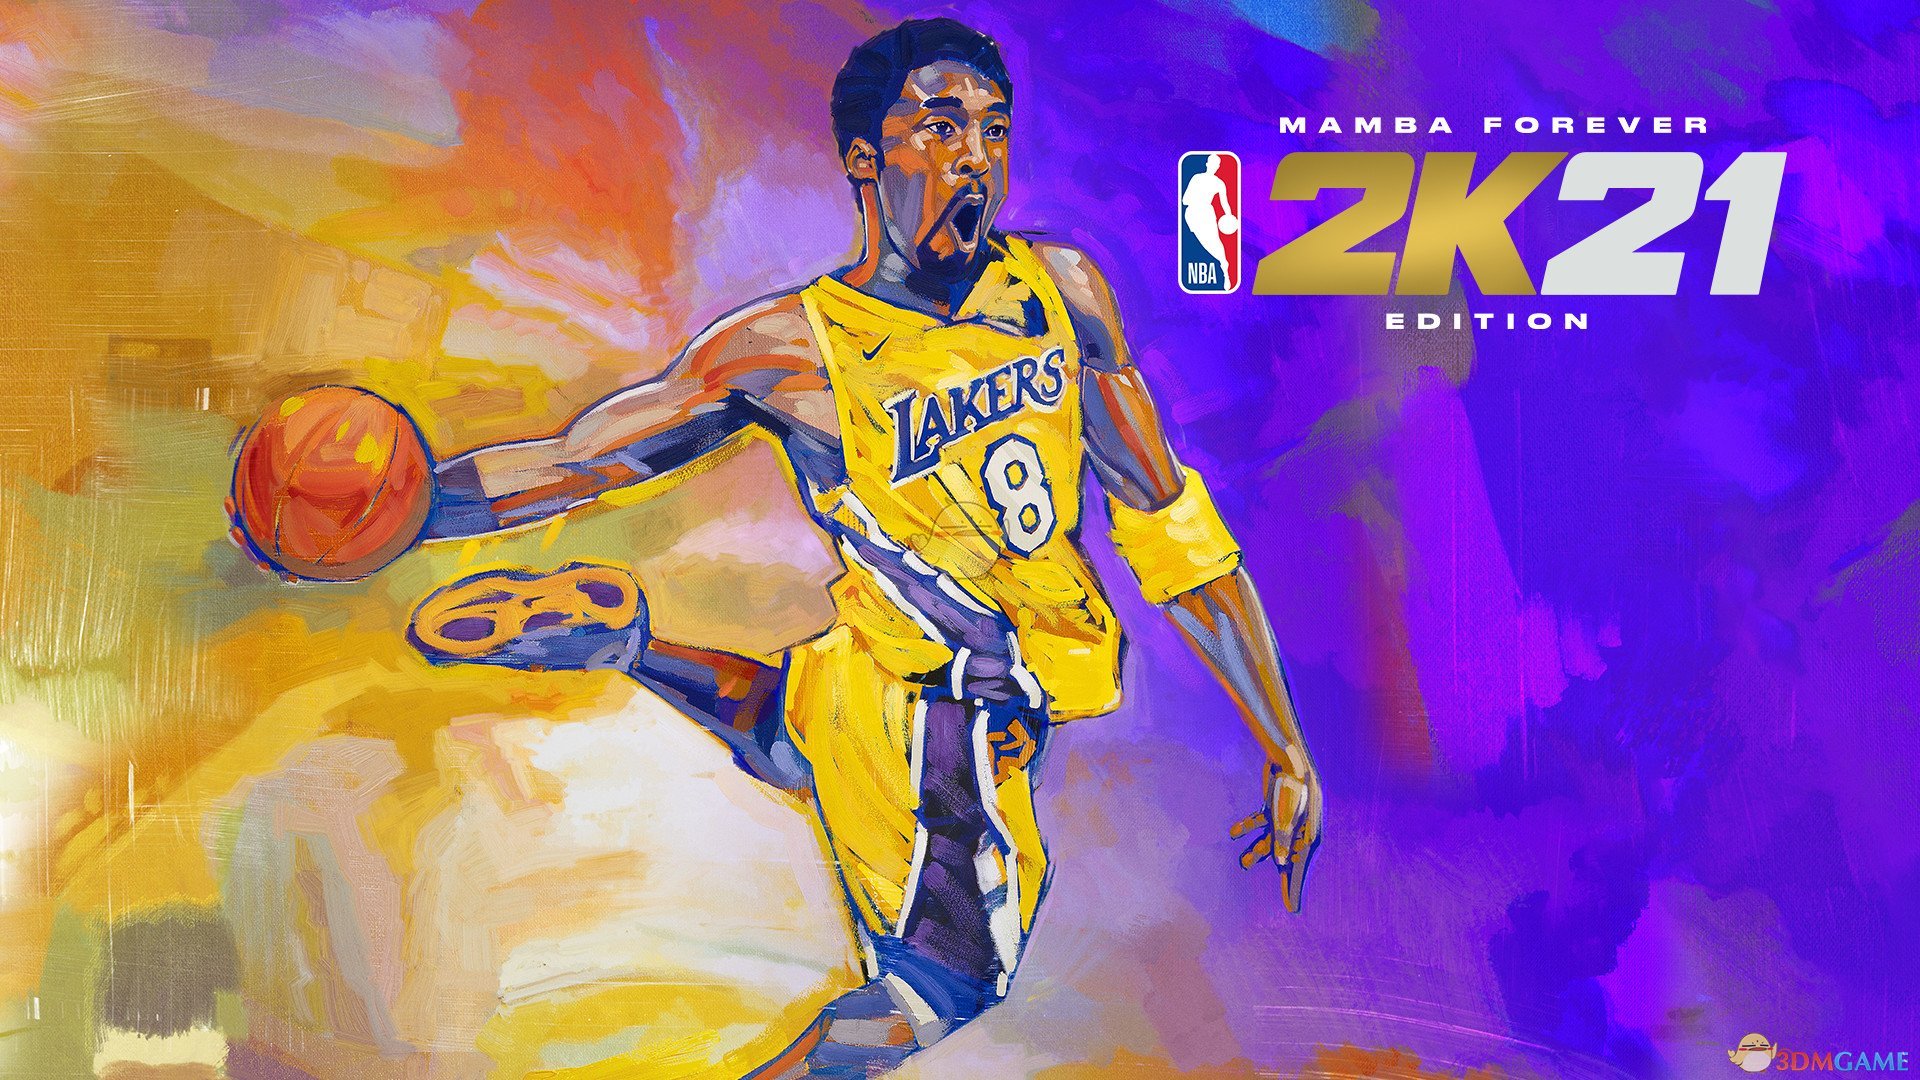 《NBA 2K21》曼巴永恒版奖励内容一览